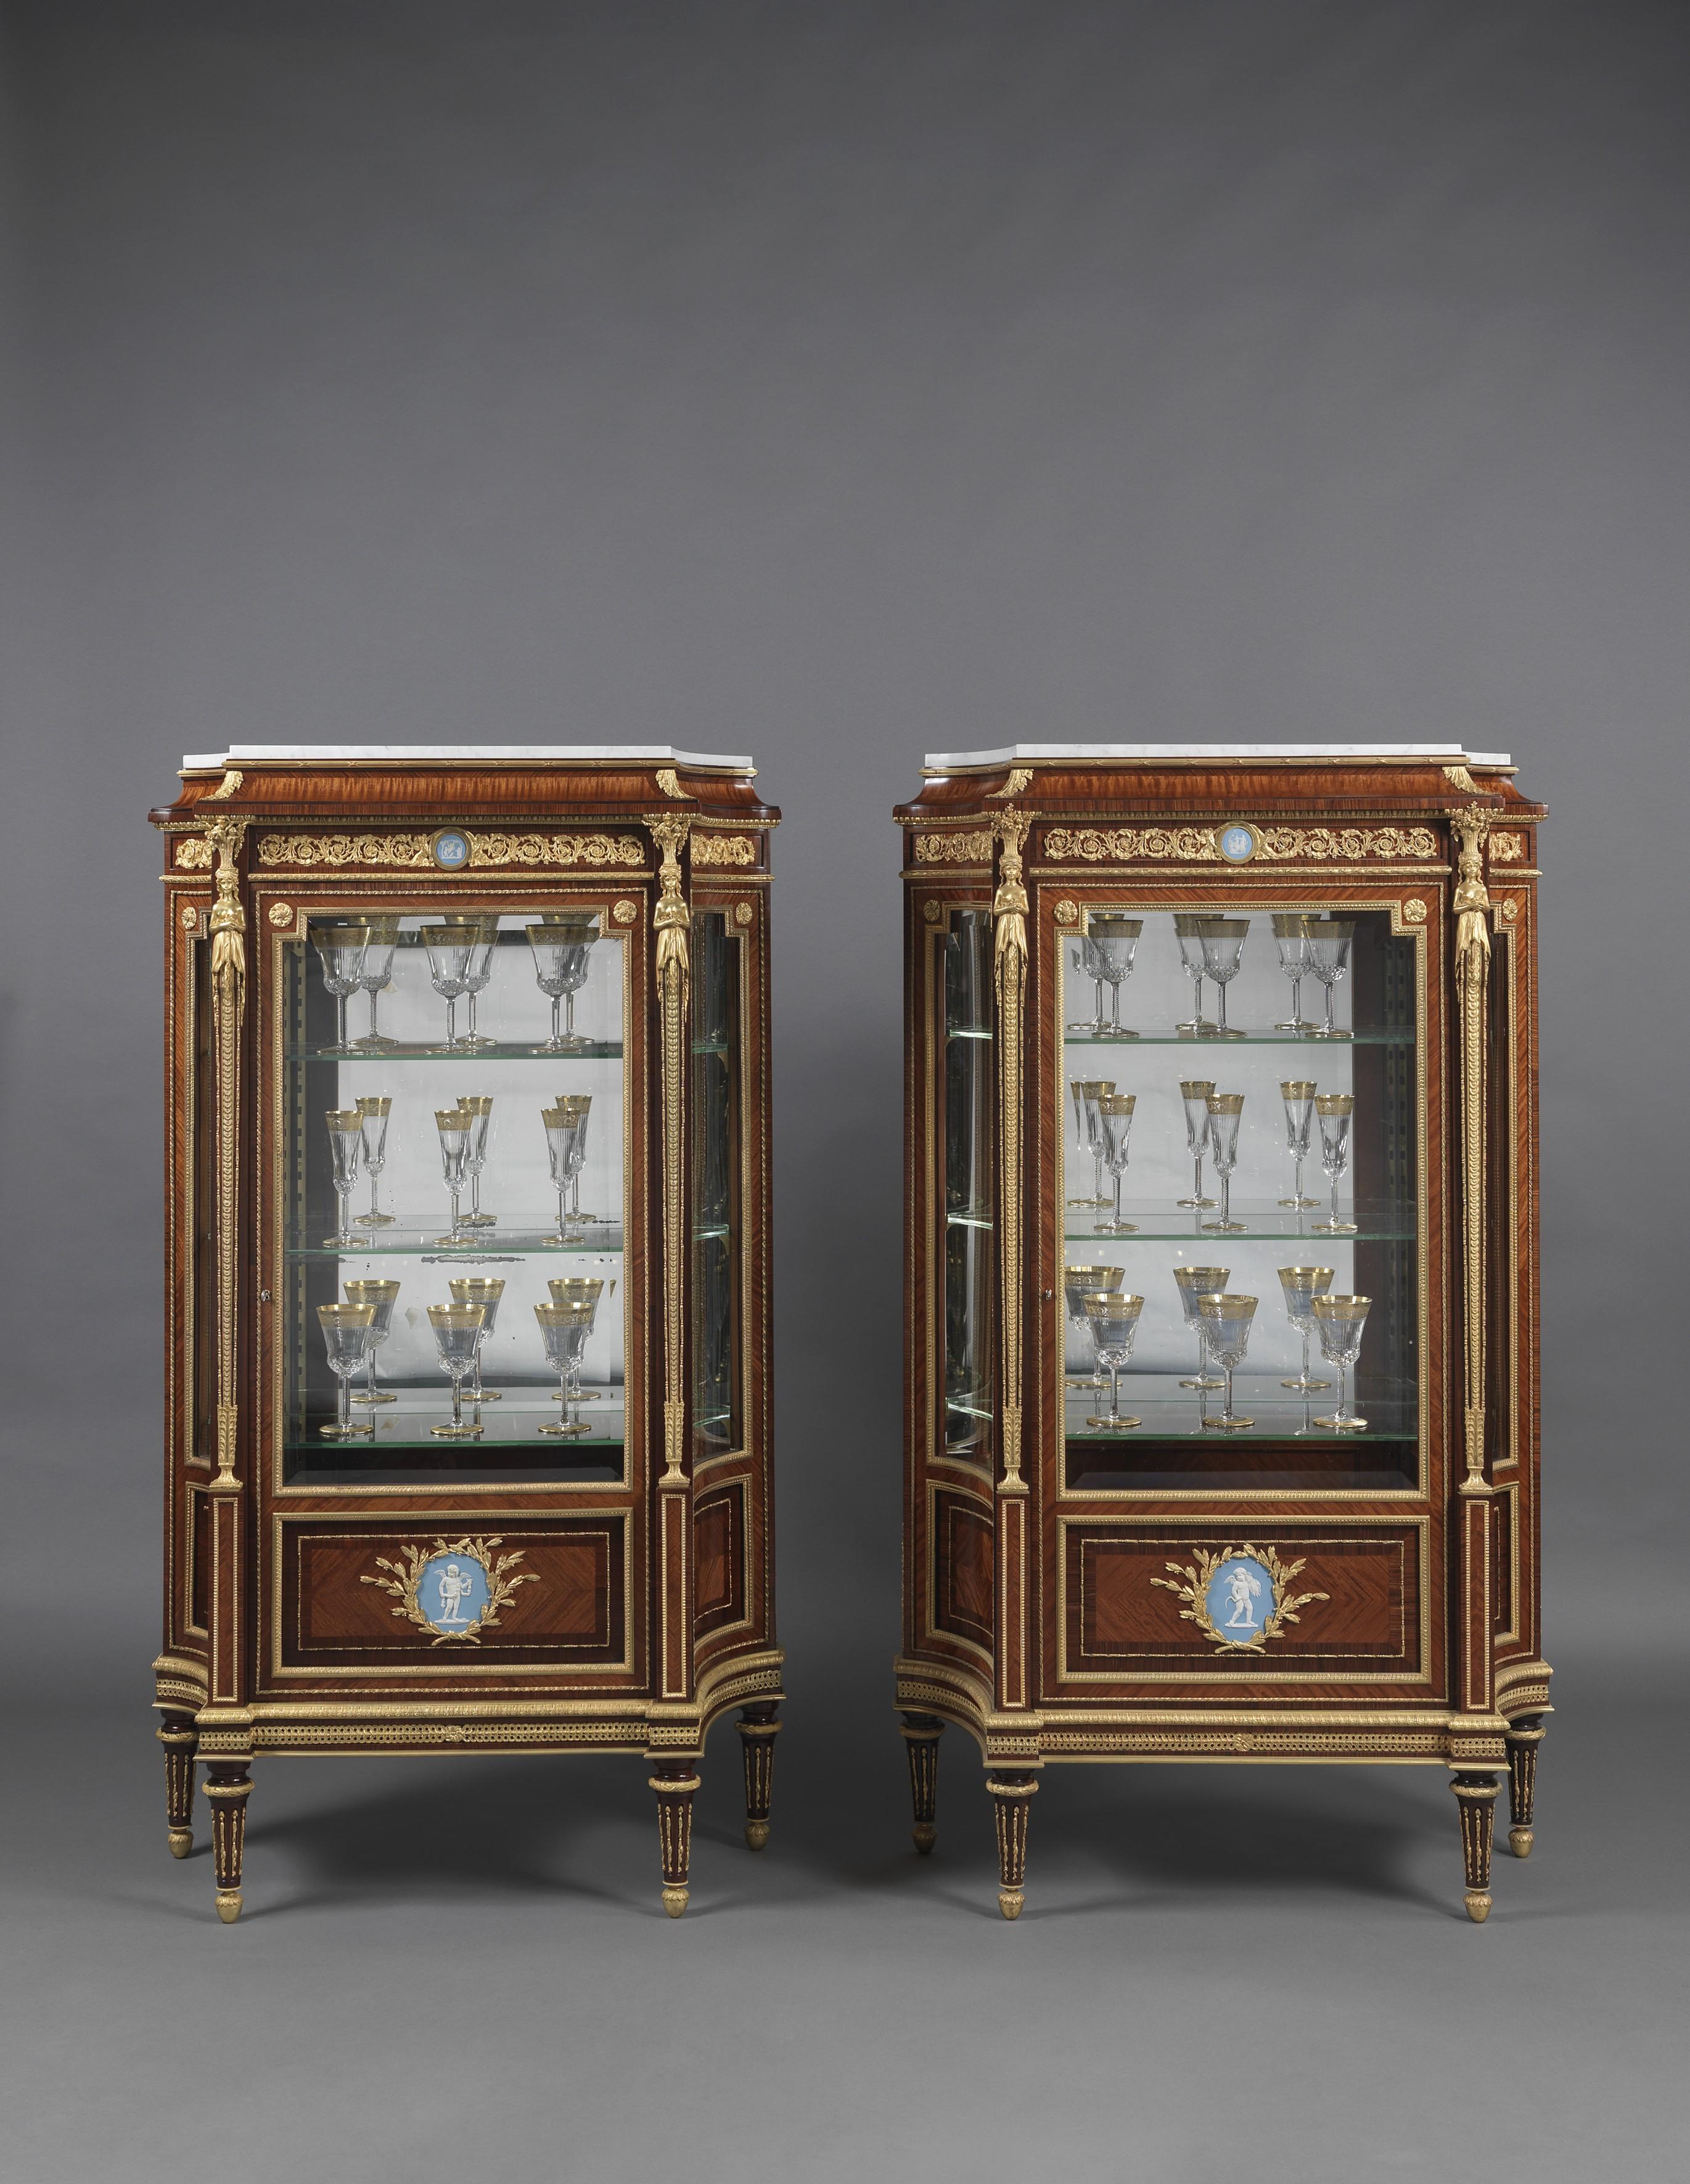 Importante paire de vitrines de style Louis XVI montées en bronze doré avec des plaques en bois de jaspe cunéiforme, par Joseph-Emmanuel Zwiener.

Français, datant d'environ 1880. 

Estampillés 